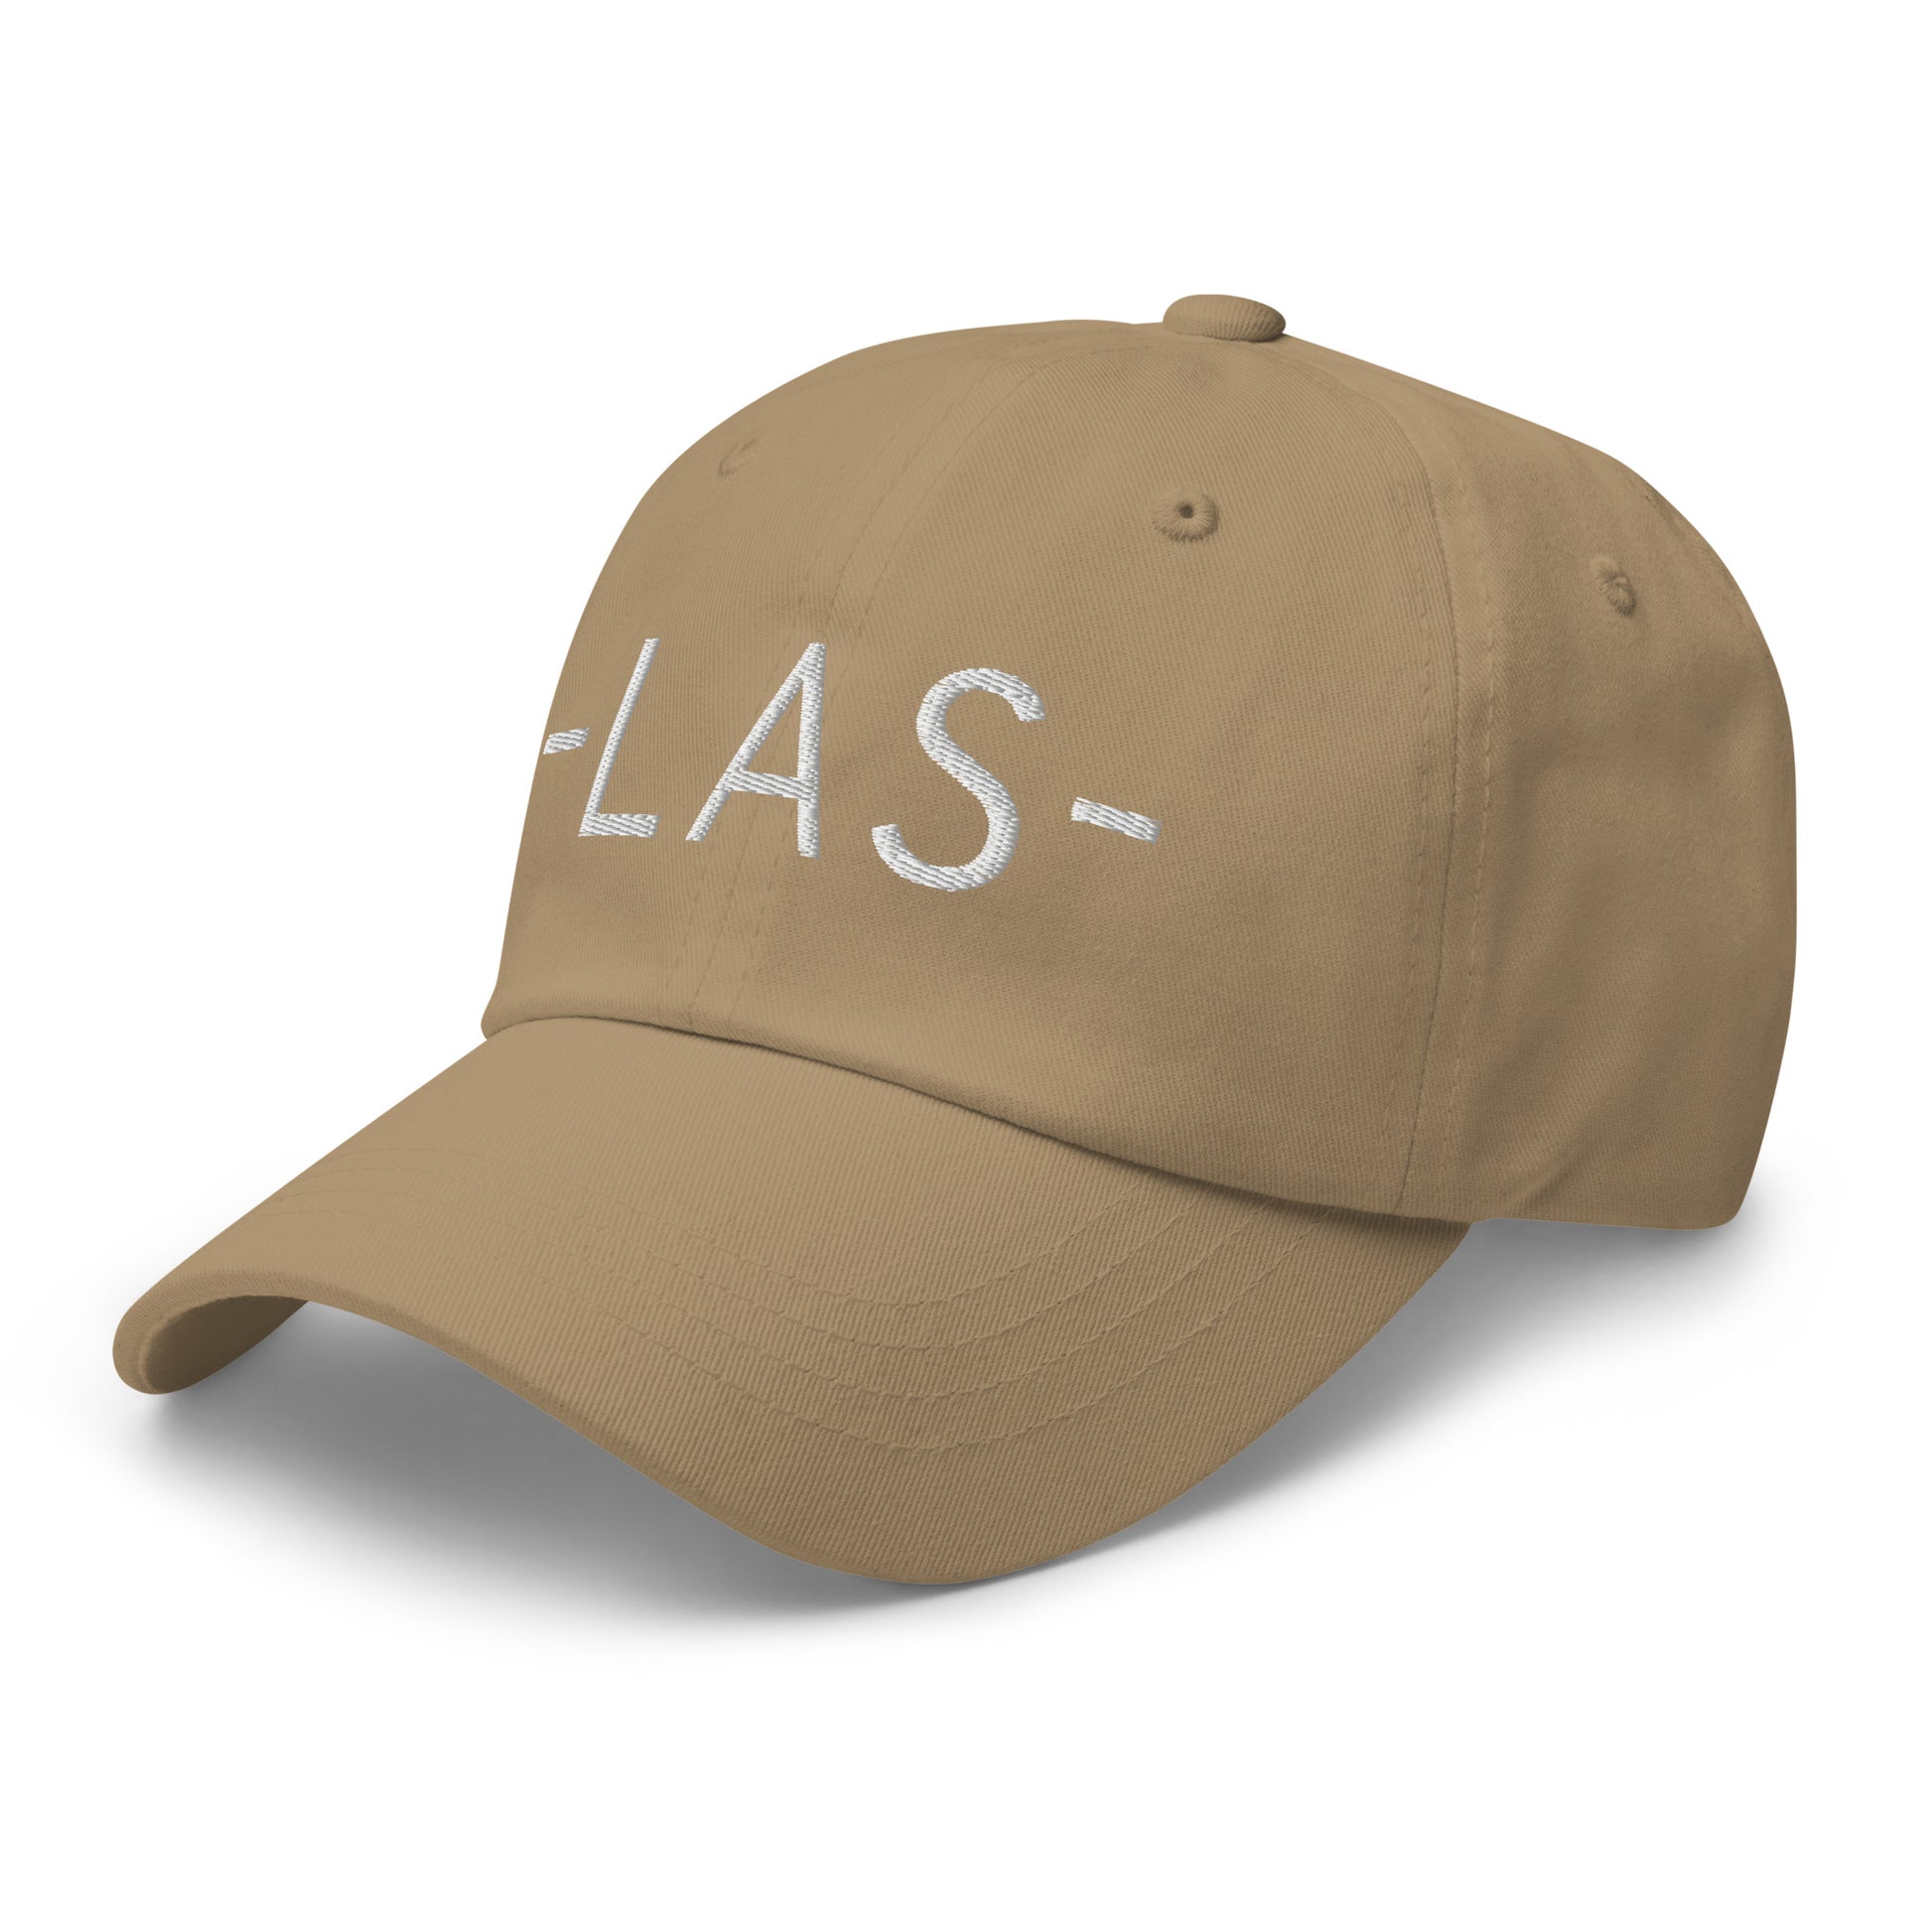 Souvenir Baseball Cap - White • LAS Las Vegas • YHM Designs - Image 22